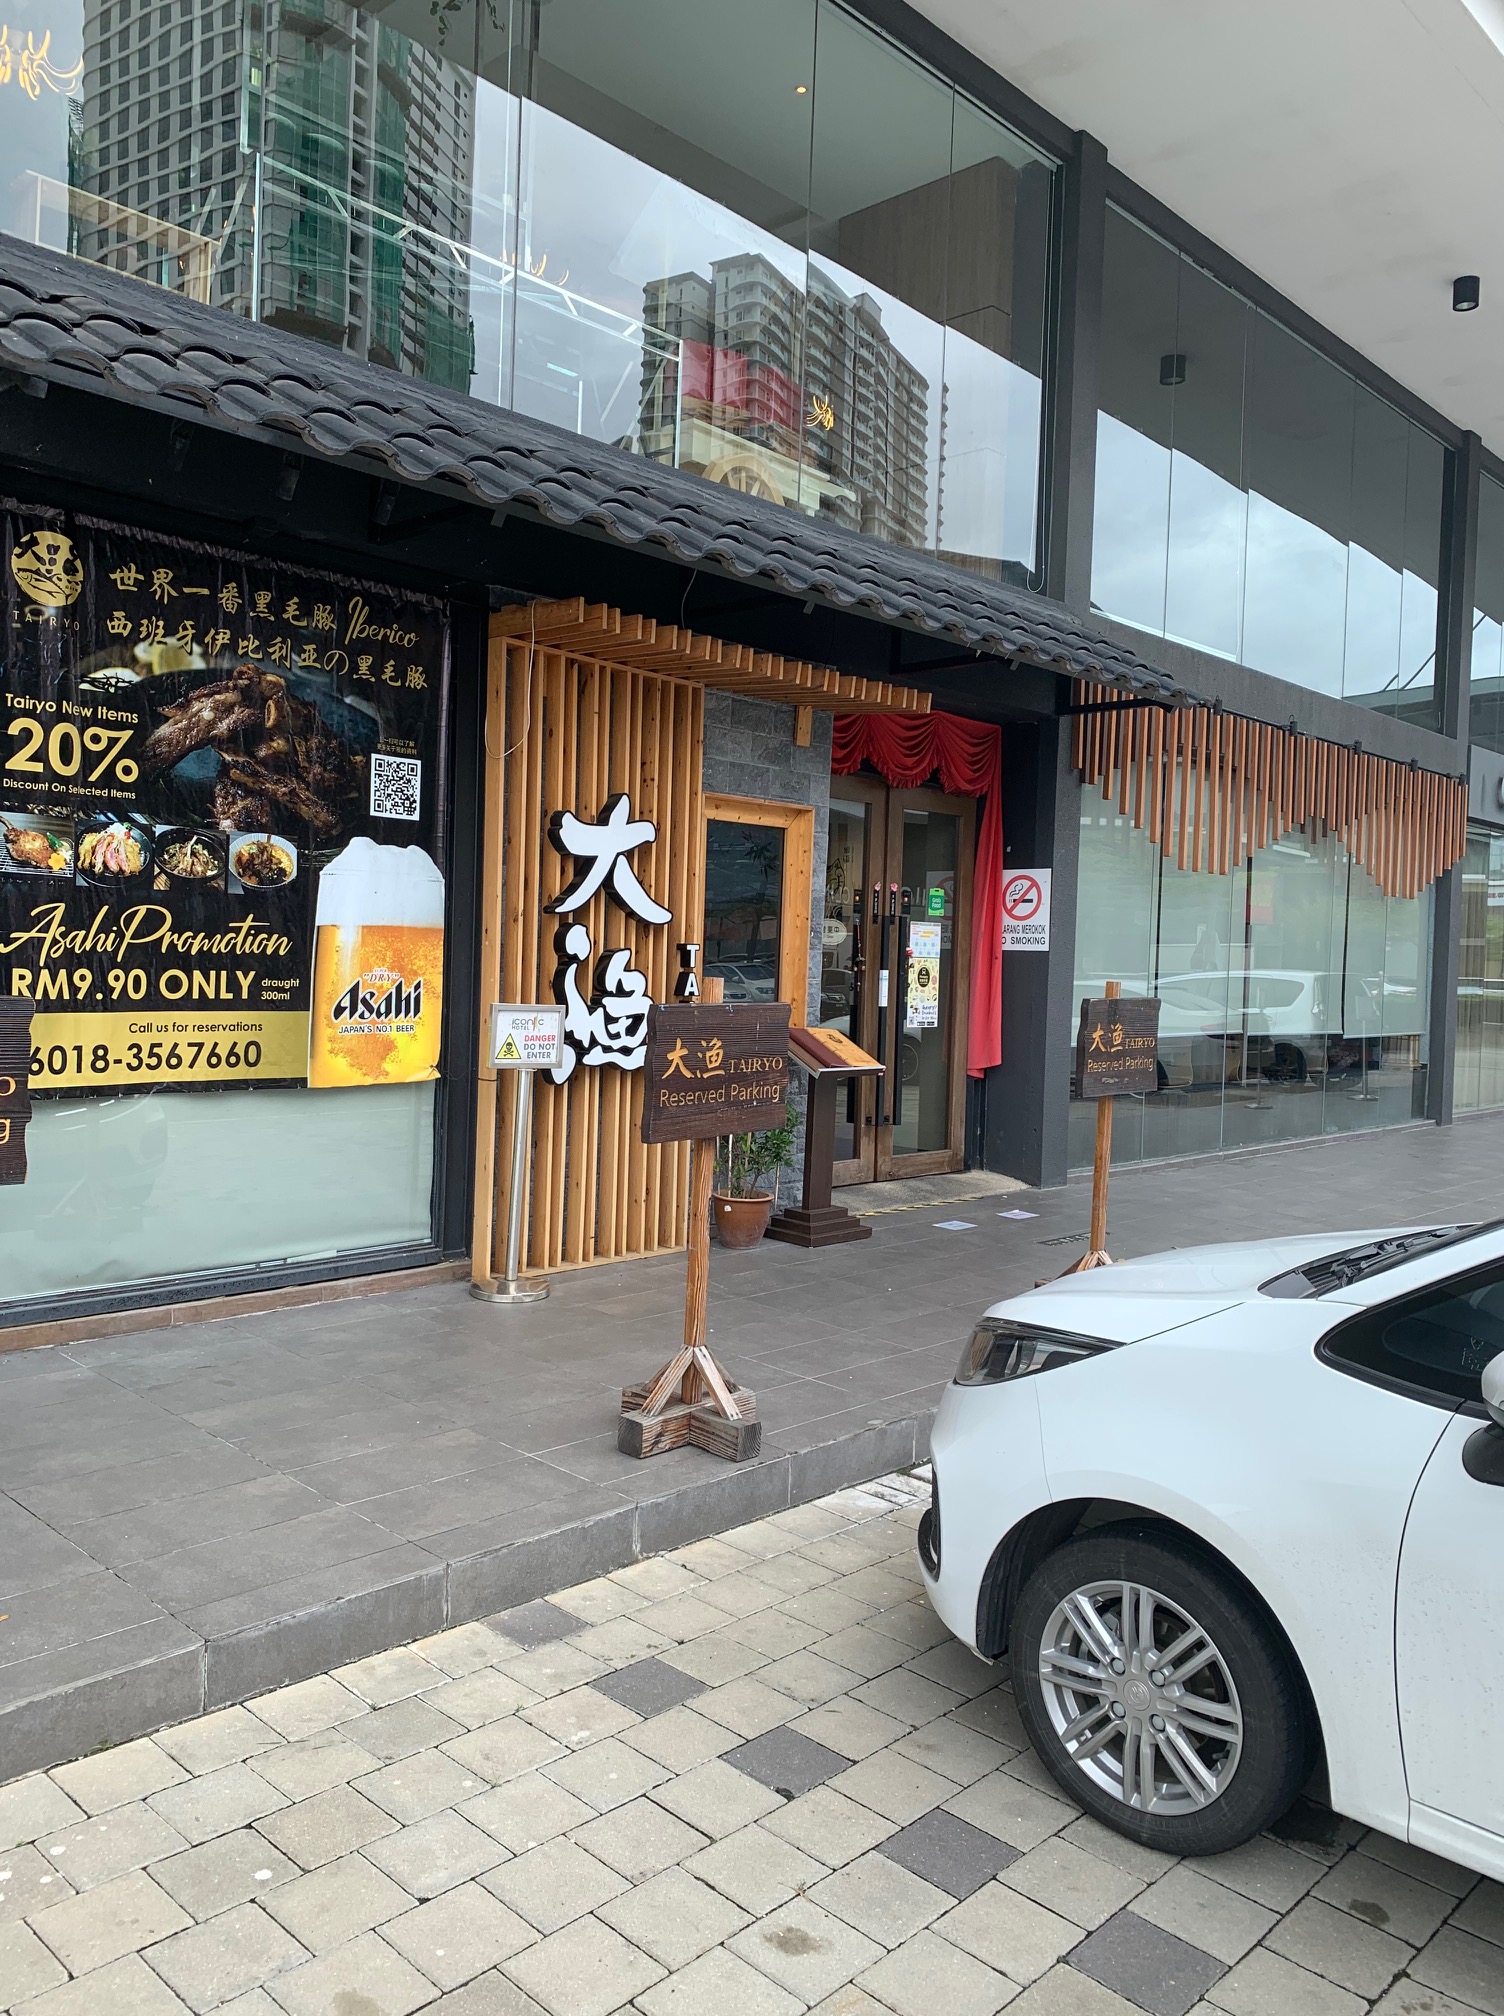 ペナンauto Cityの近くに日本食レストランが開店したよ 店名は大漁 Tairyo 1分でわかるマレーシアのおすすめスポット